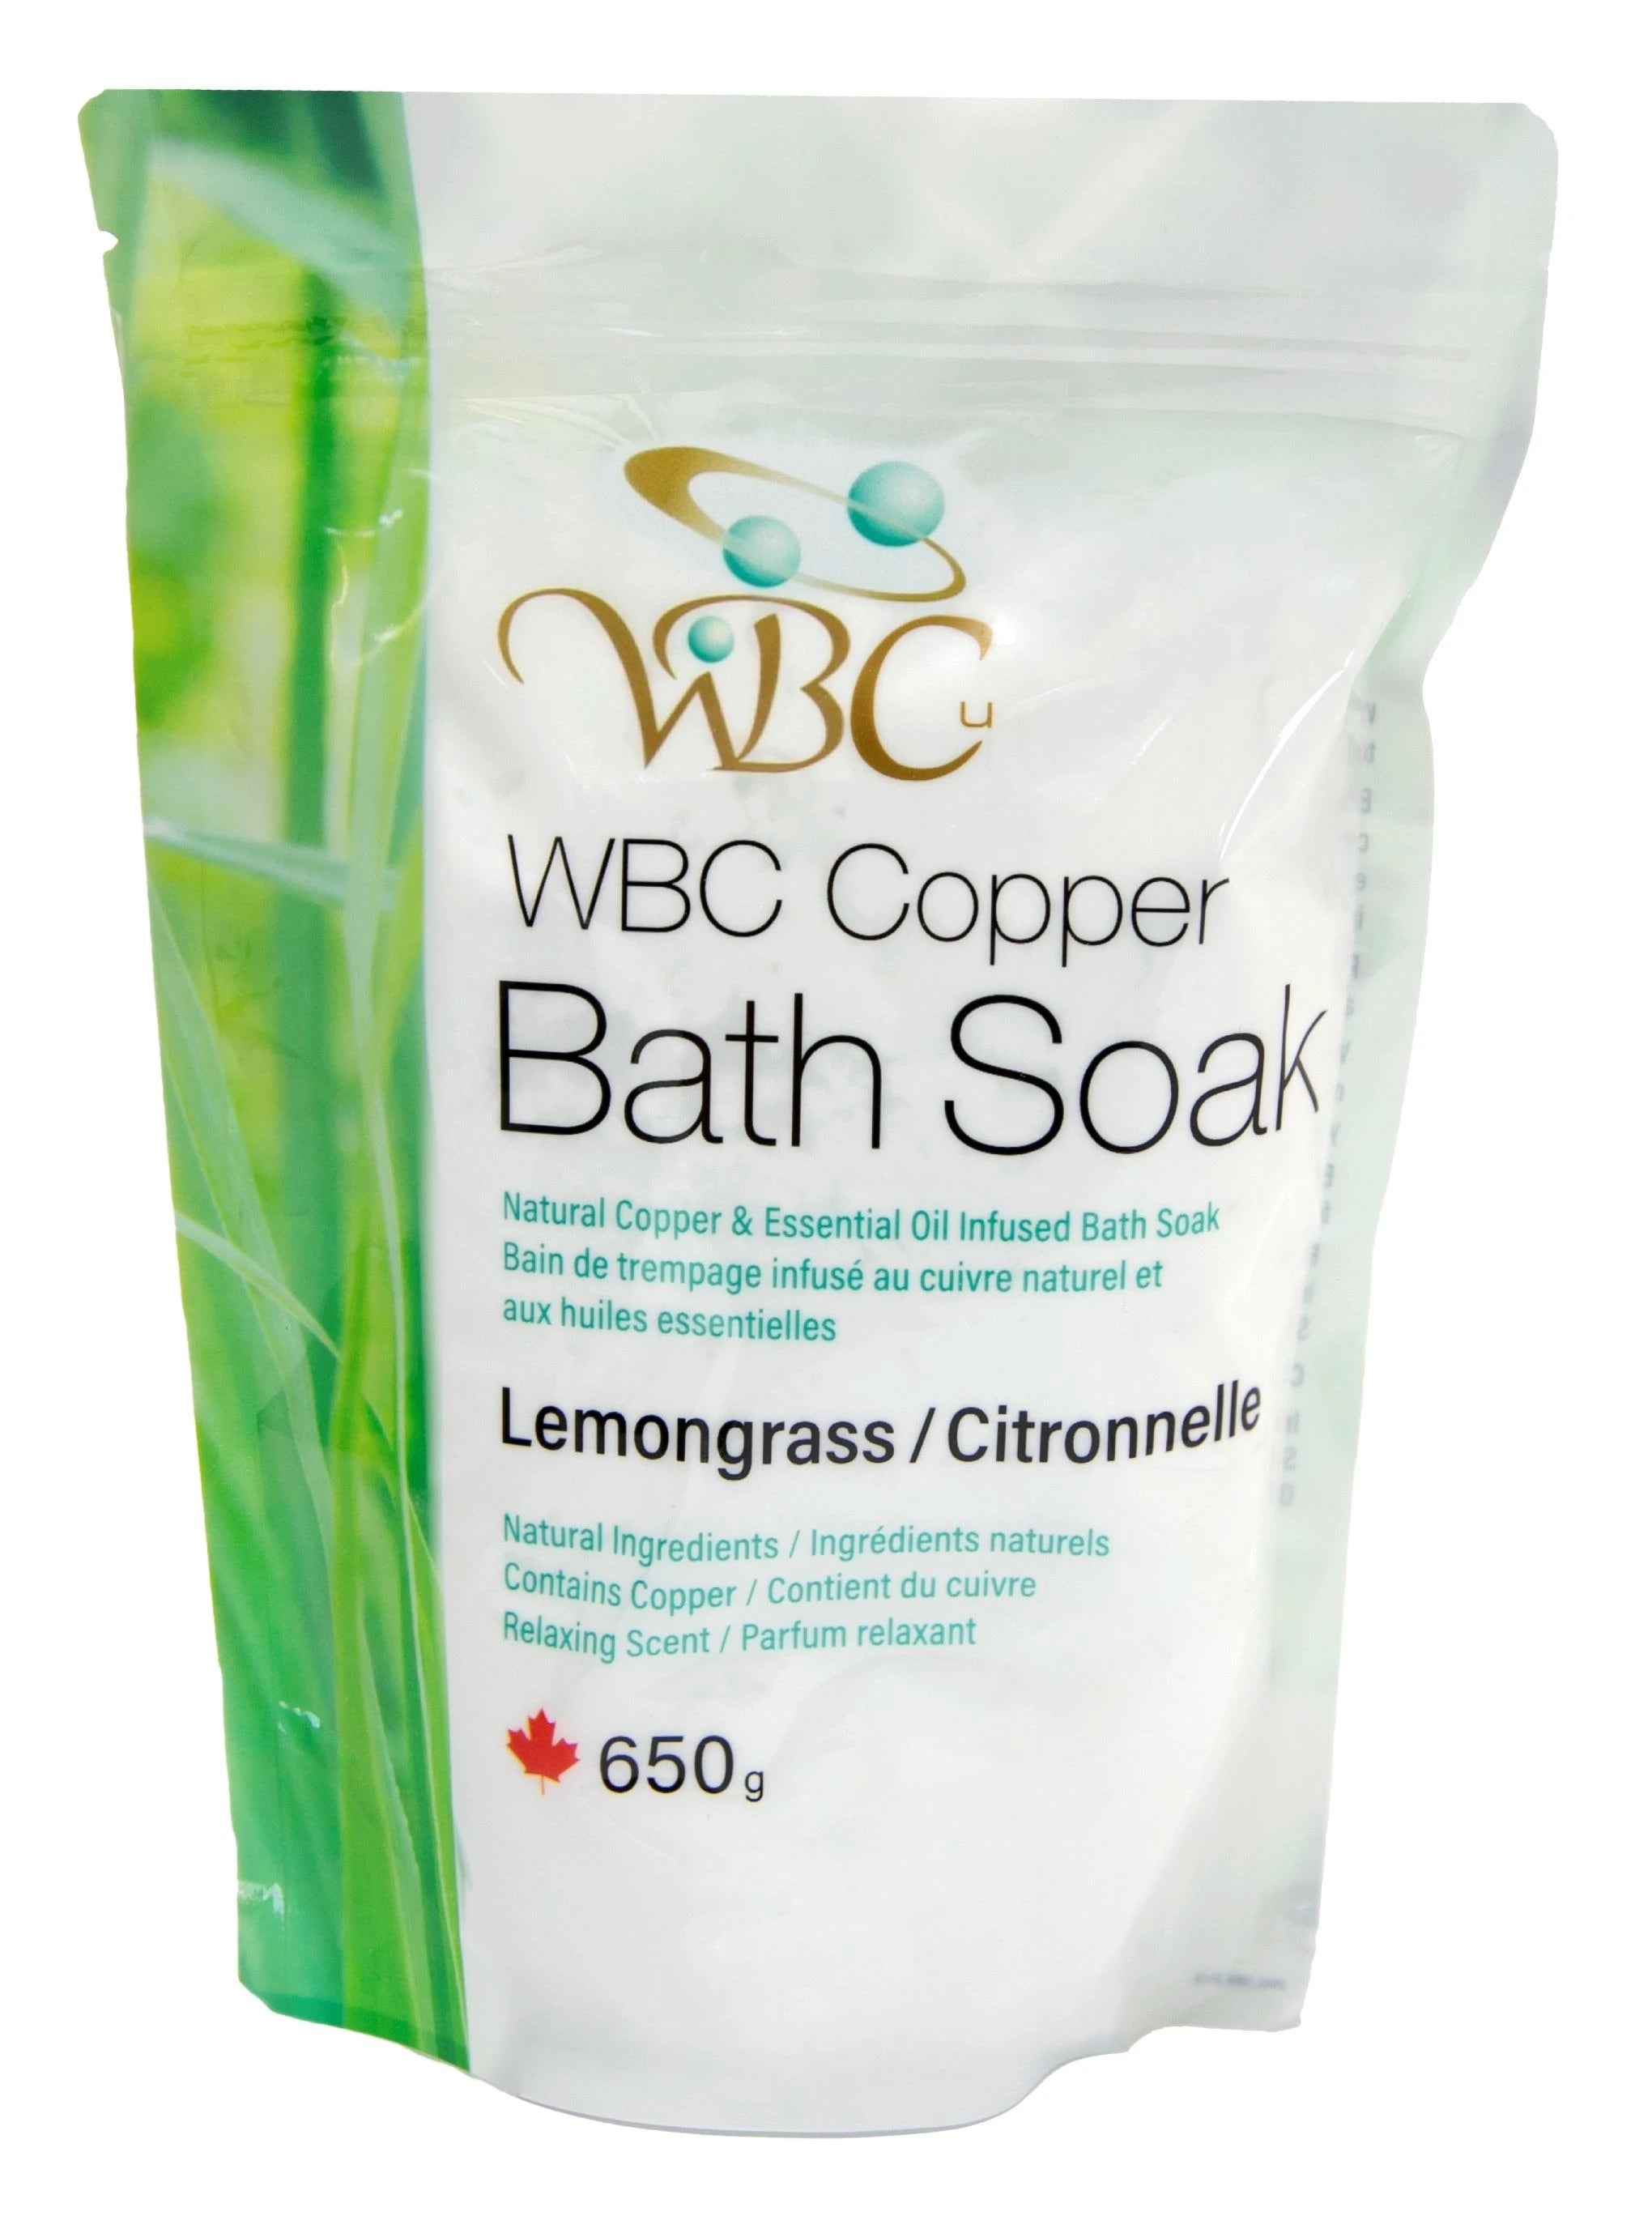 WBC Bath Soak - 650g -